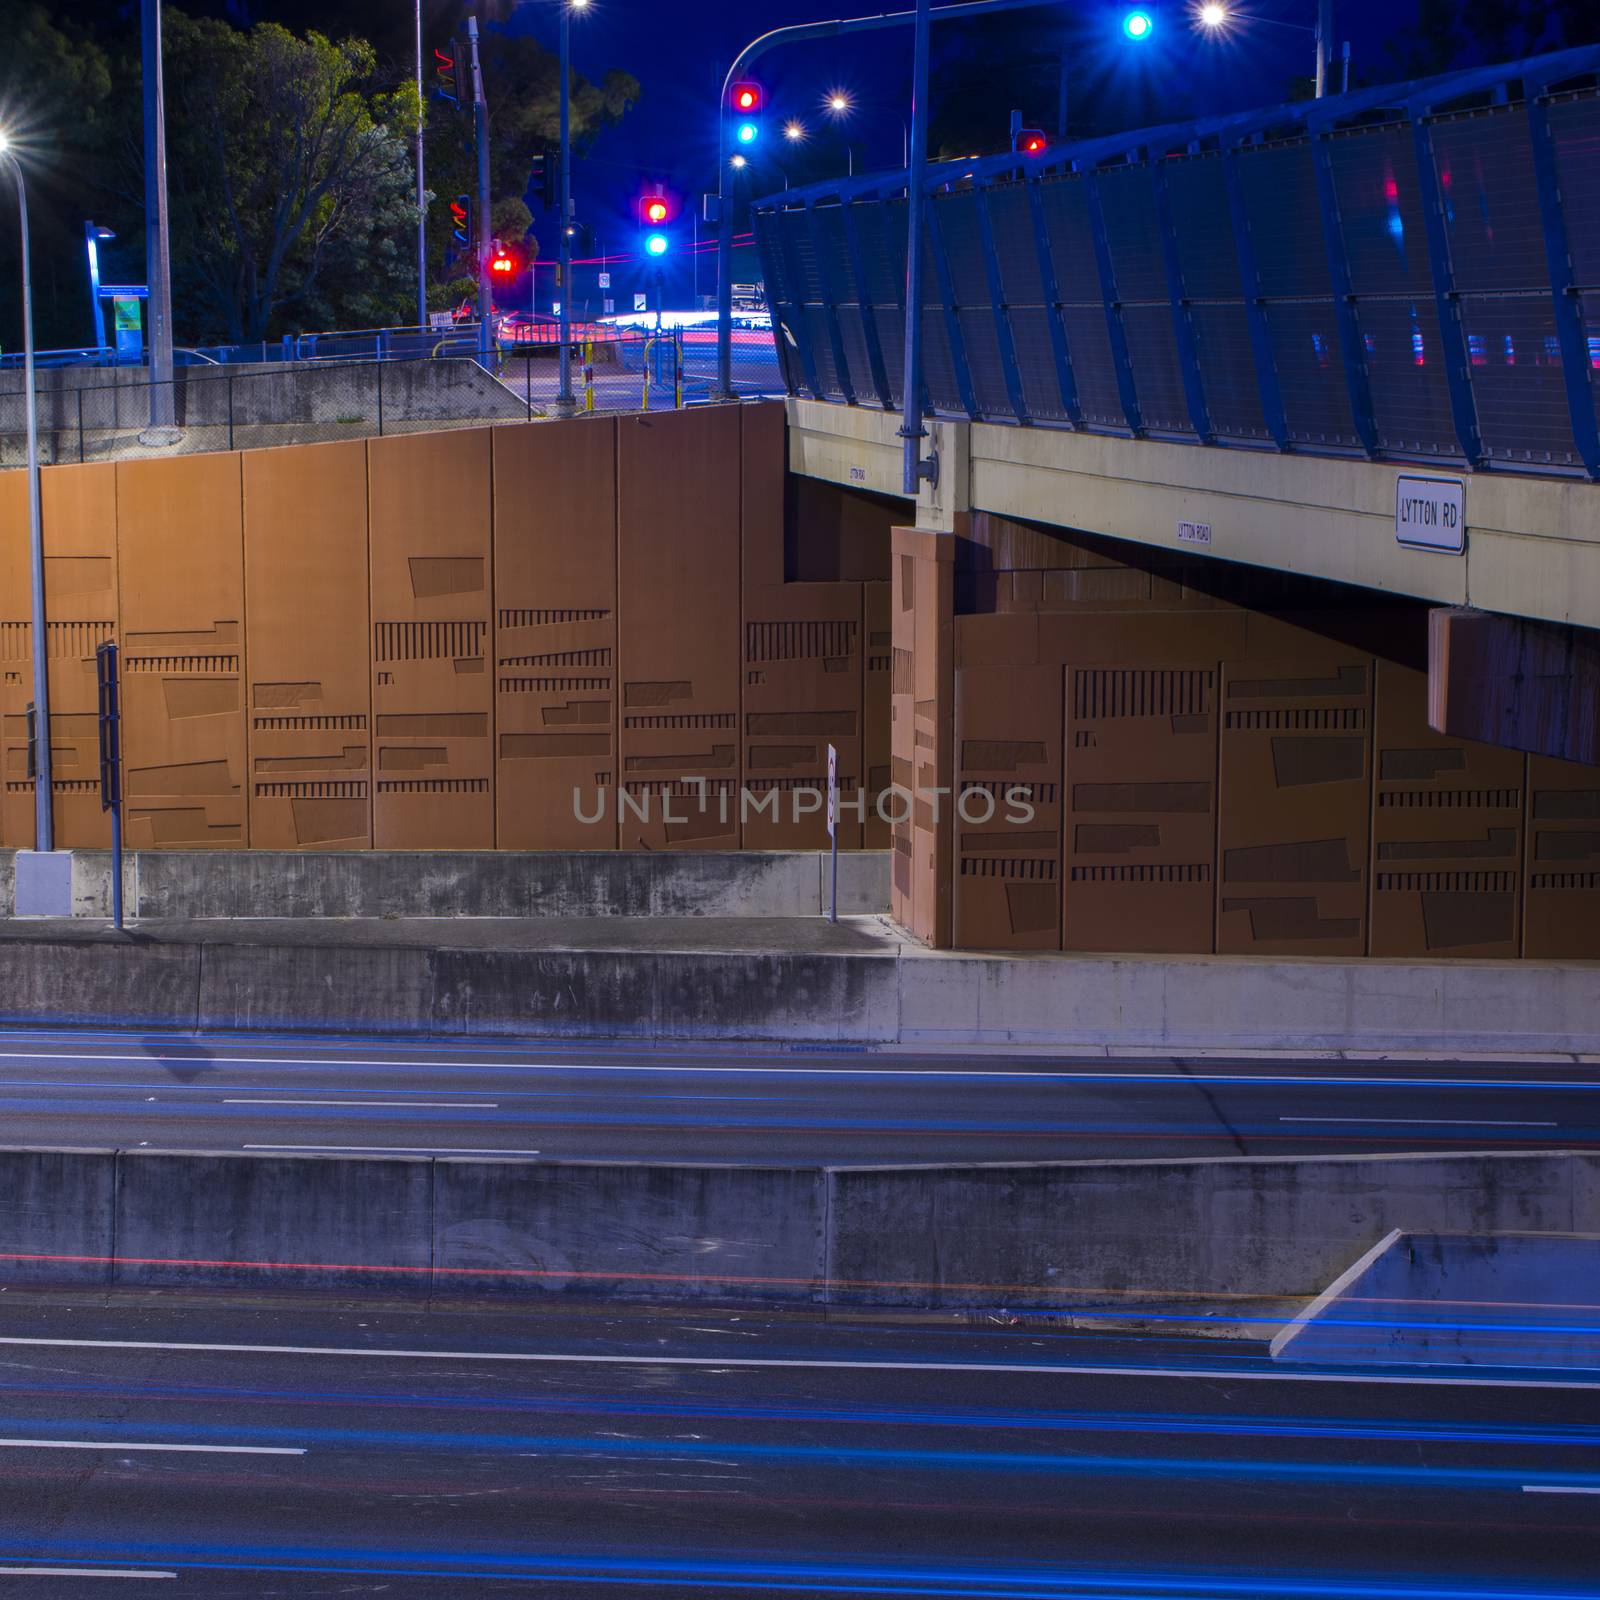 Gateway Bridge (Sir Leo Hielscher Bridges) in Brisbane, Queensland, Australia.